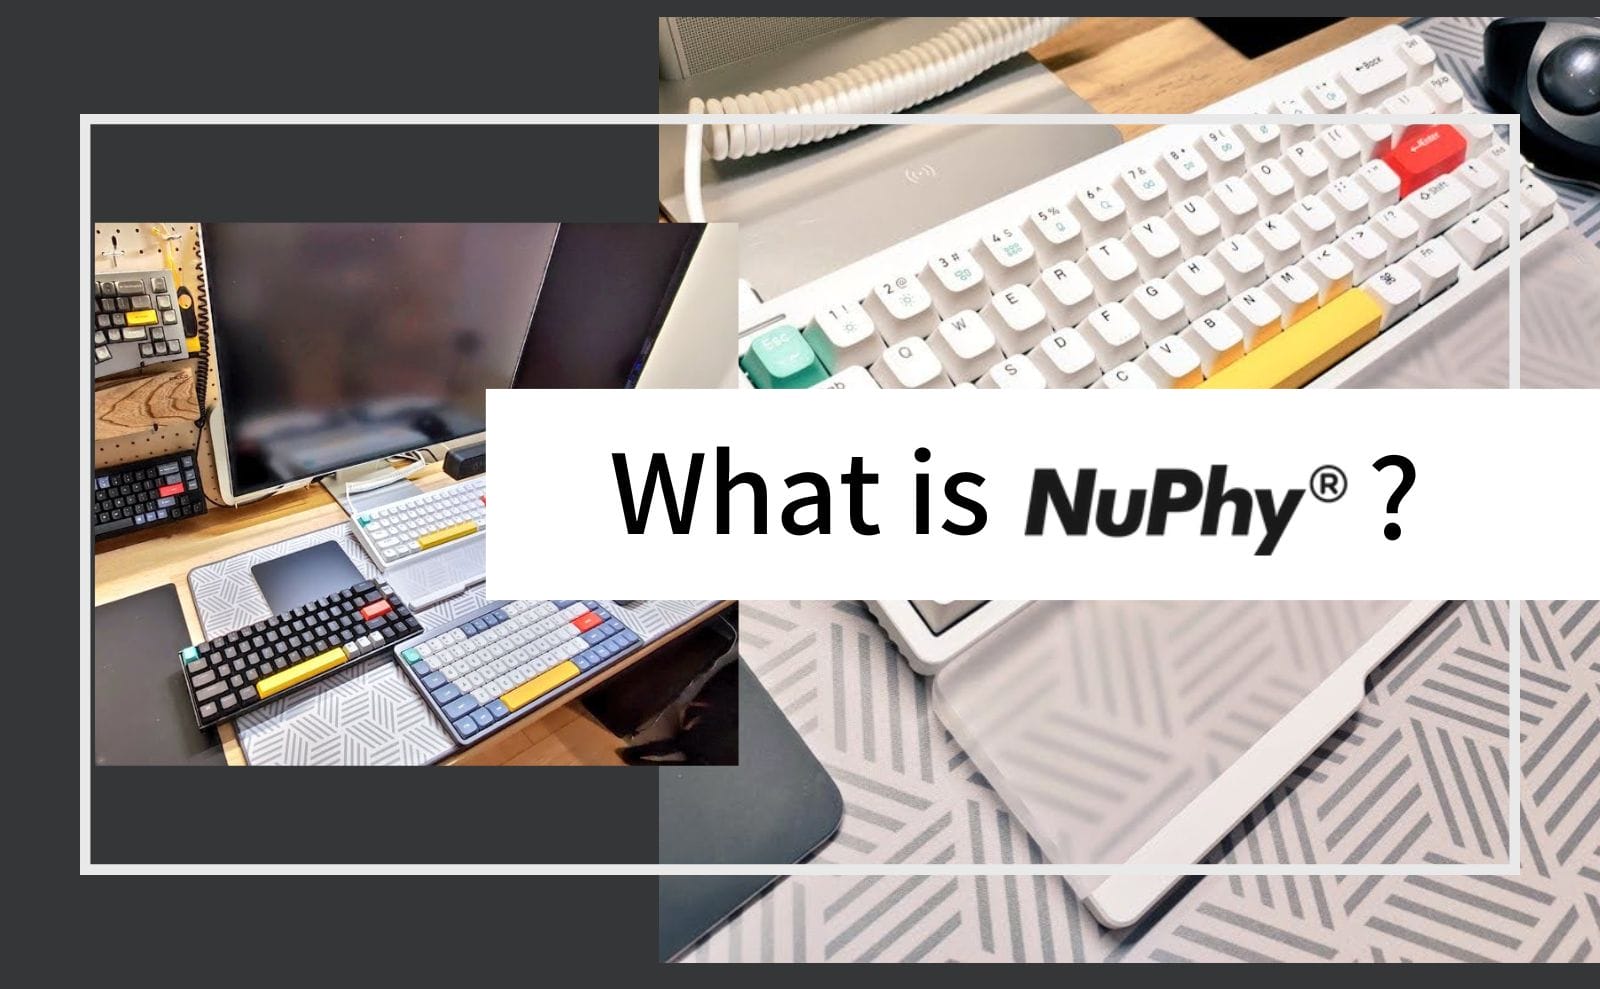 NuPhyとは？おしゃれなデザインで話題の新進気鋭のキーボードブランドについて紹介